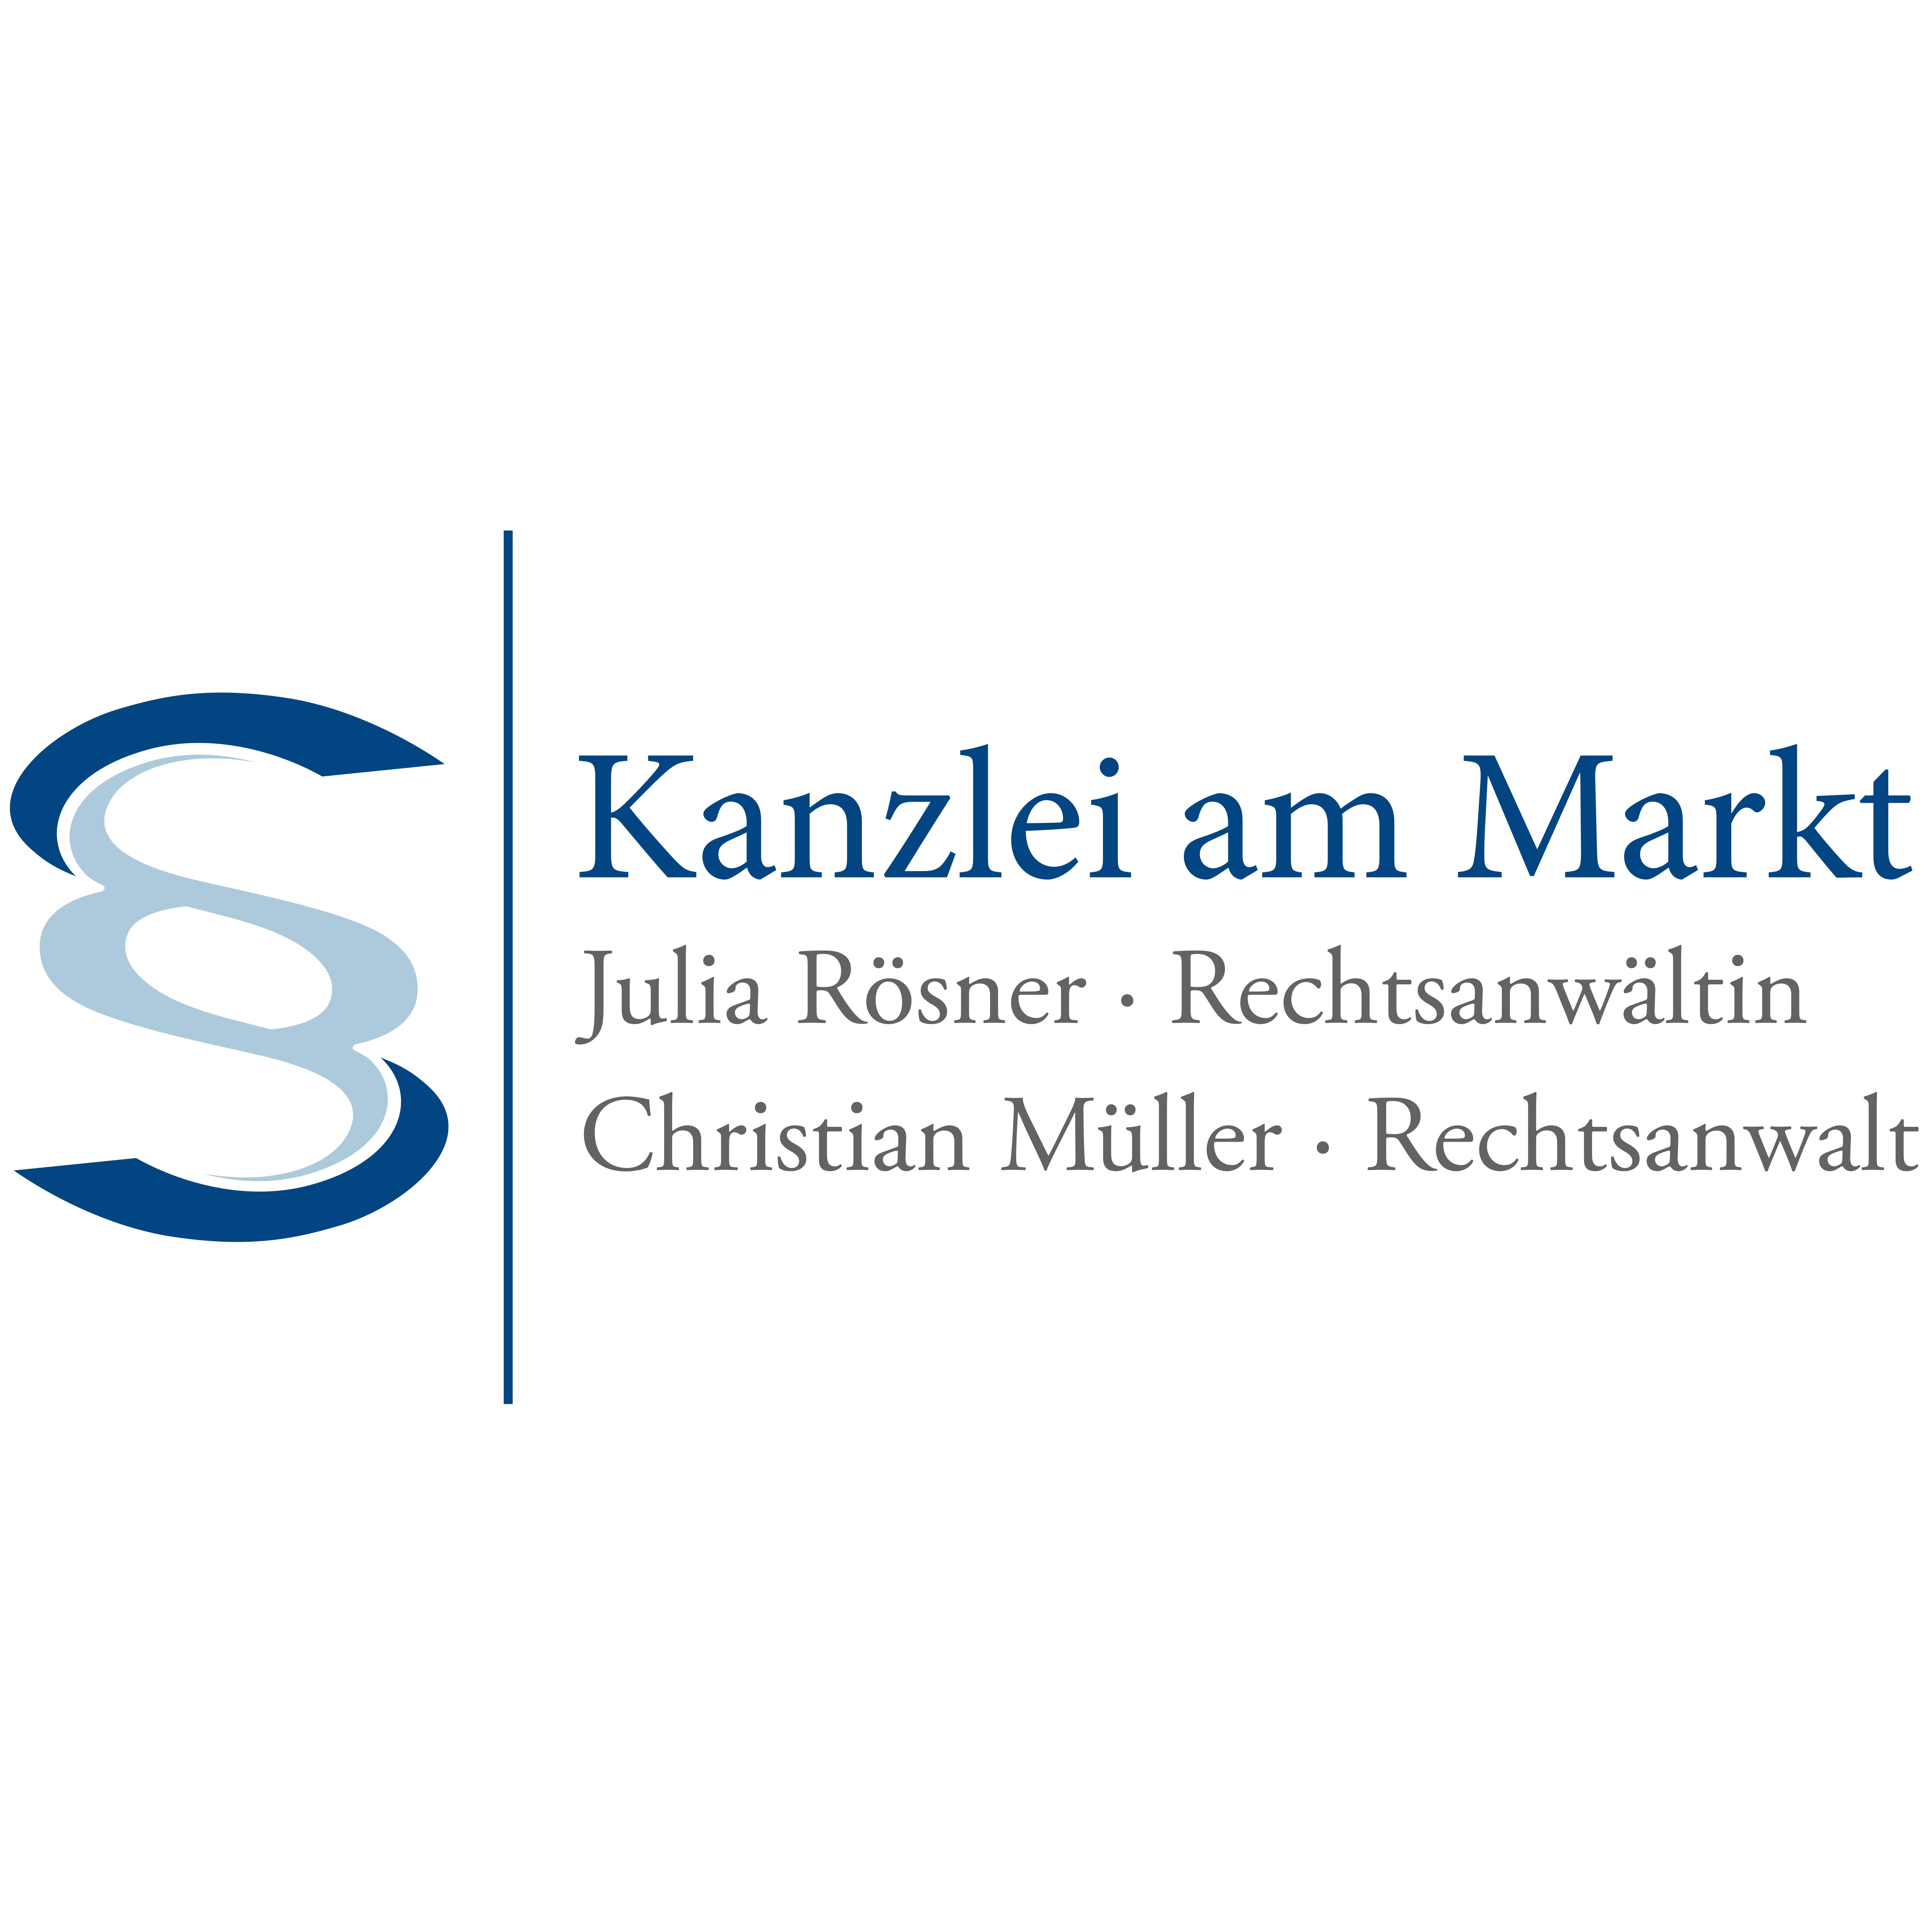 Kanzlei am Markt Julia Rösner | Christian Müller Rechtsanwälte